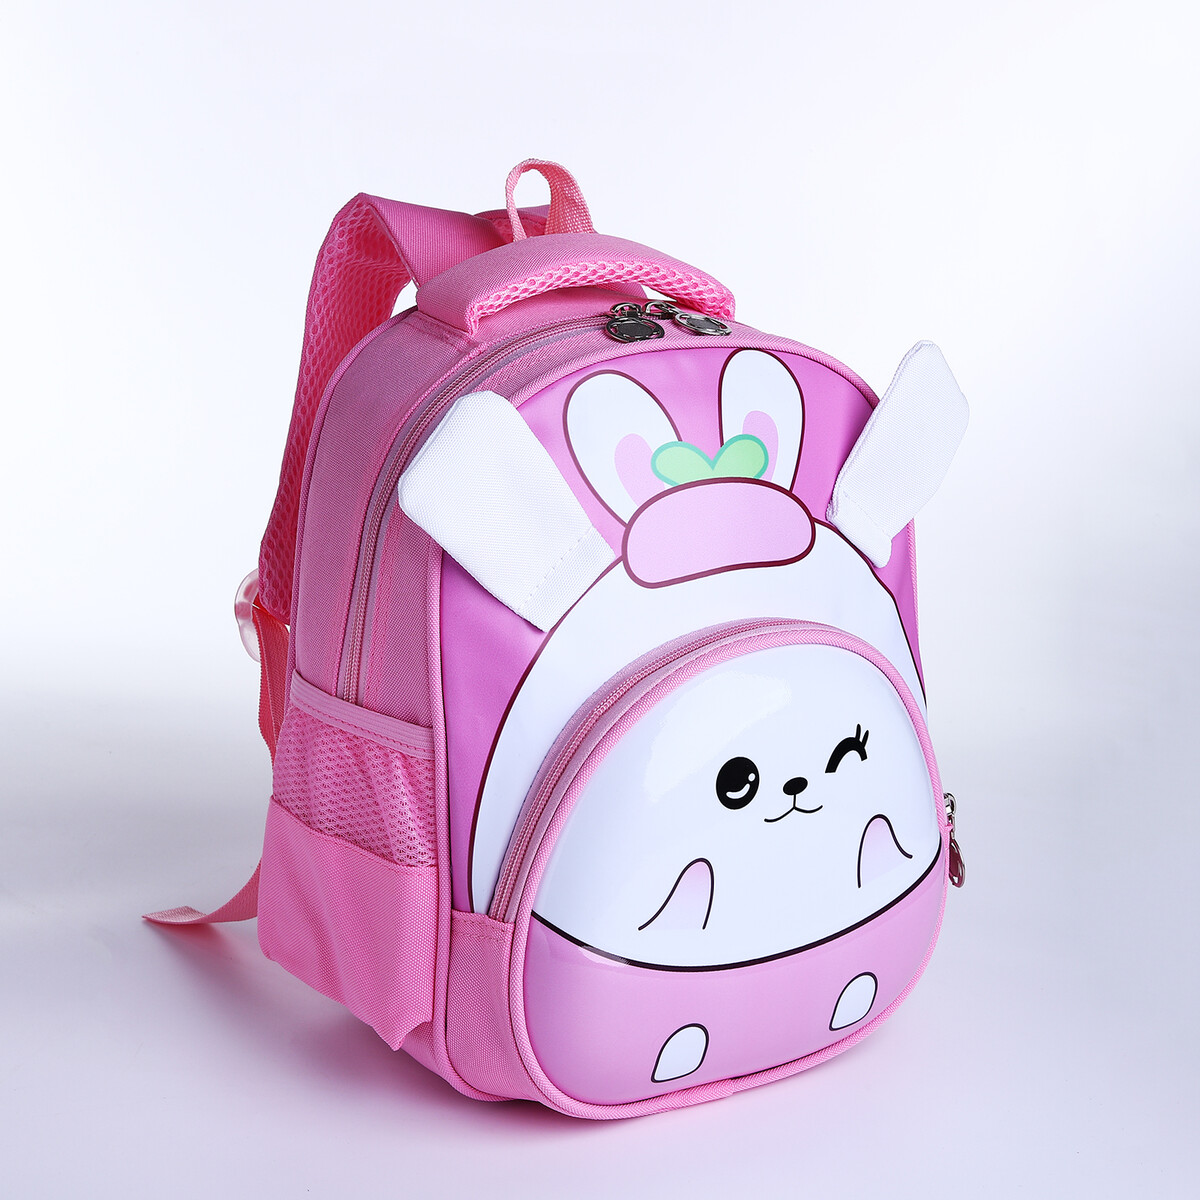 Рюкзак детский на молнии, 3 наружных кармана, цвет розовый рюкзак детский на молнии 3 наружных кармана зеленый